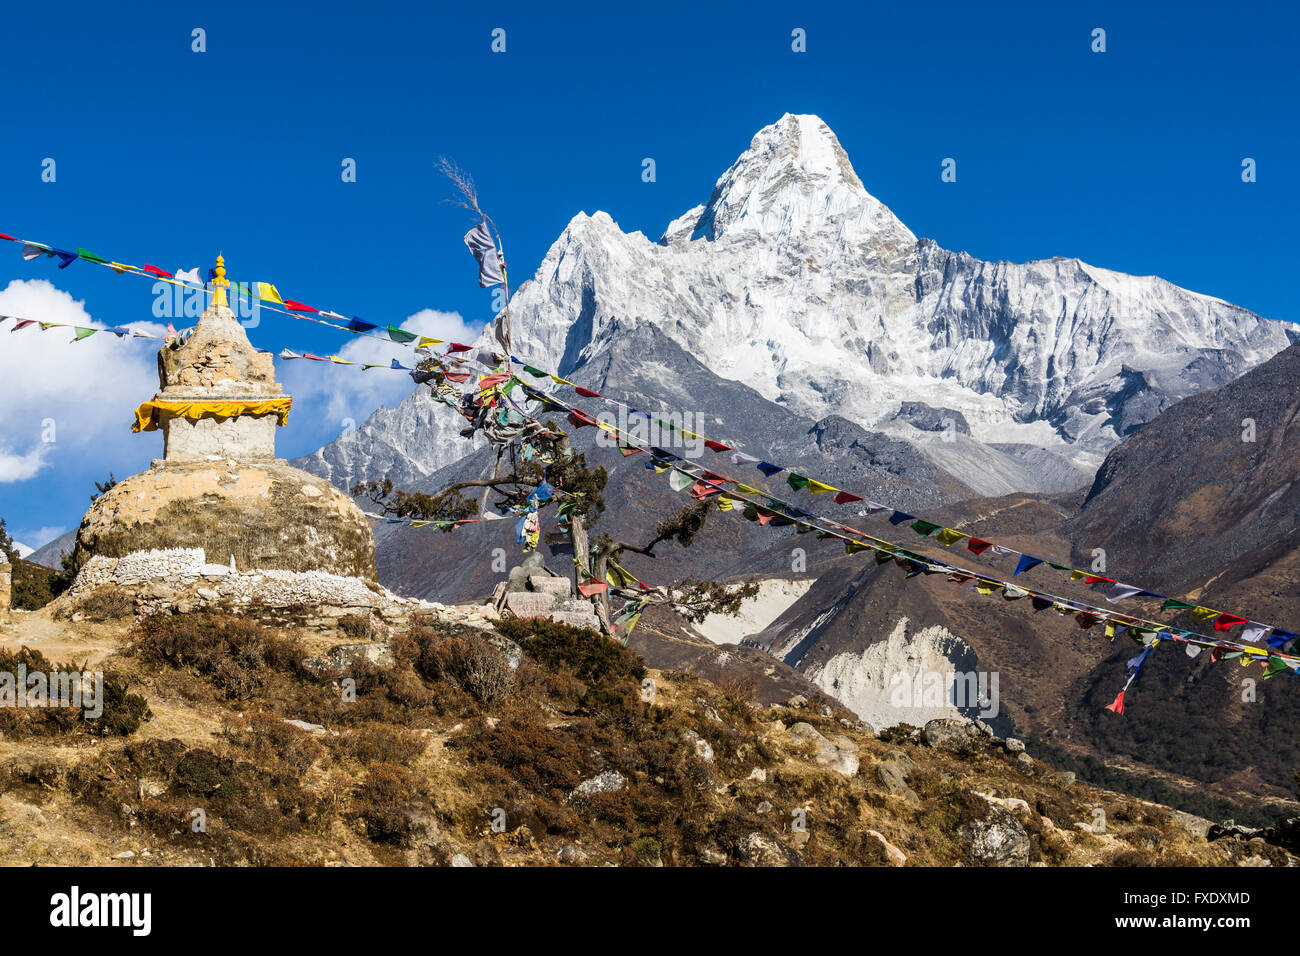 Buddhist stupa and prayer flags, mountain Ama Dablam (6856m) behind, Pangboche, Solo Khumbu, Nepal Stock Photo